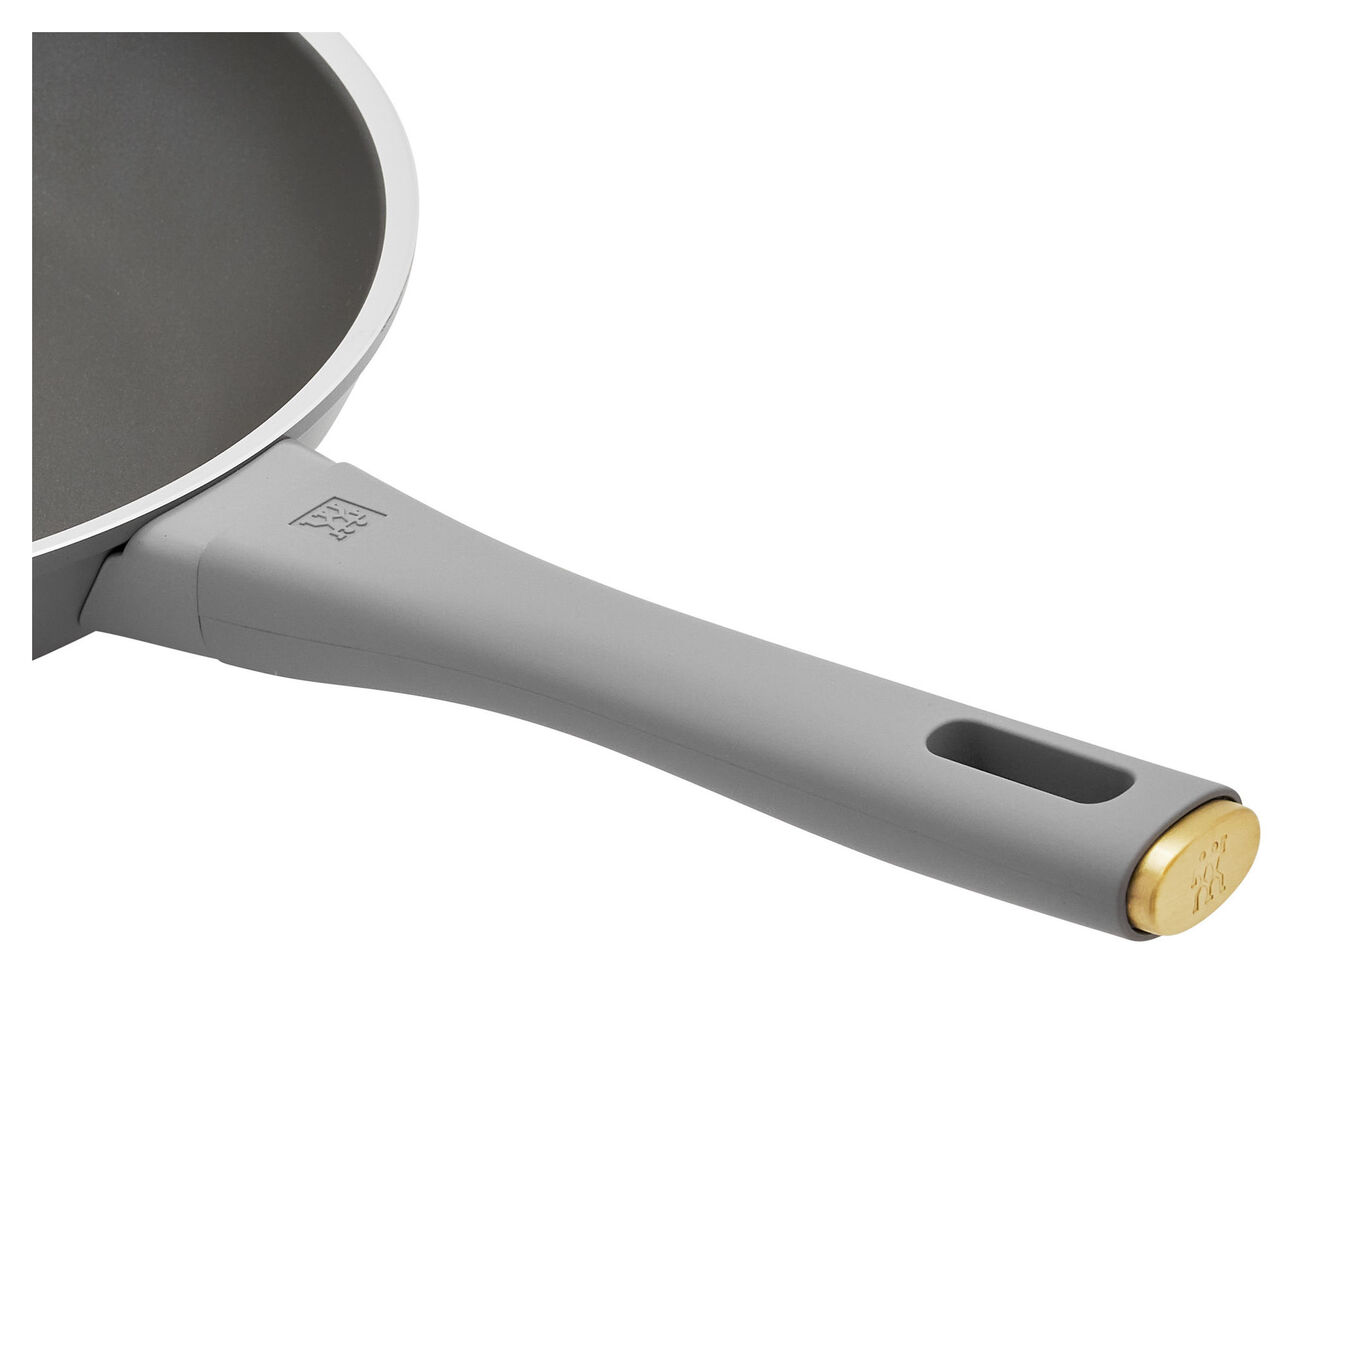 20 cm / 8 inch aluminium Frying pan,,large 5